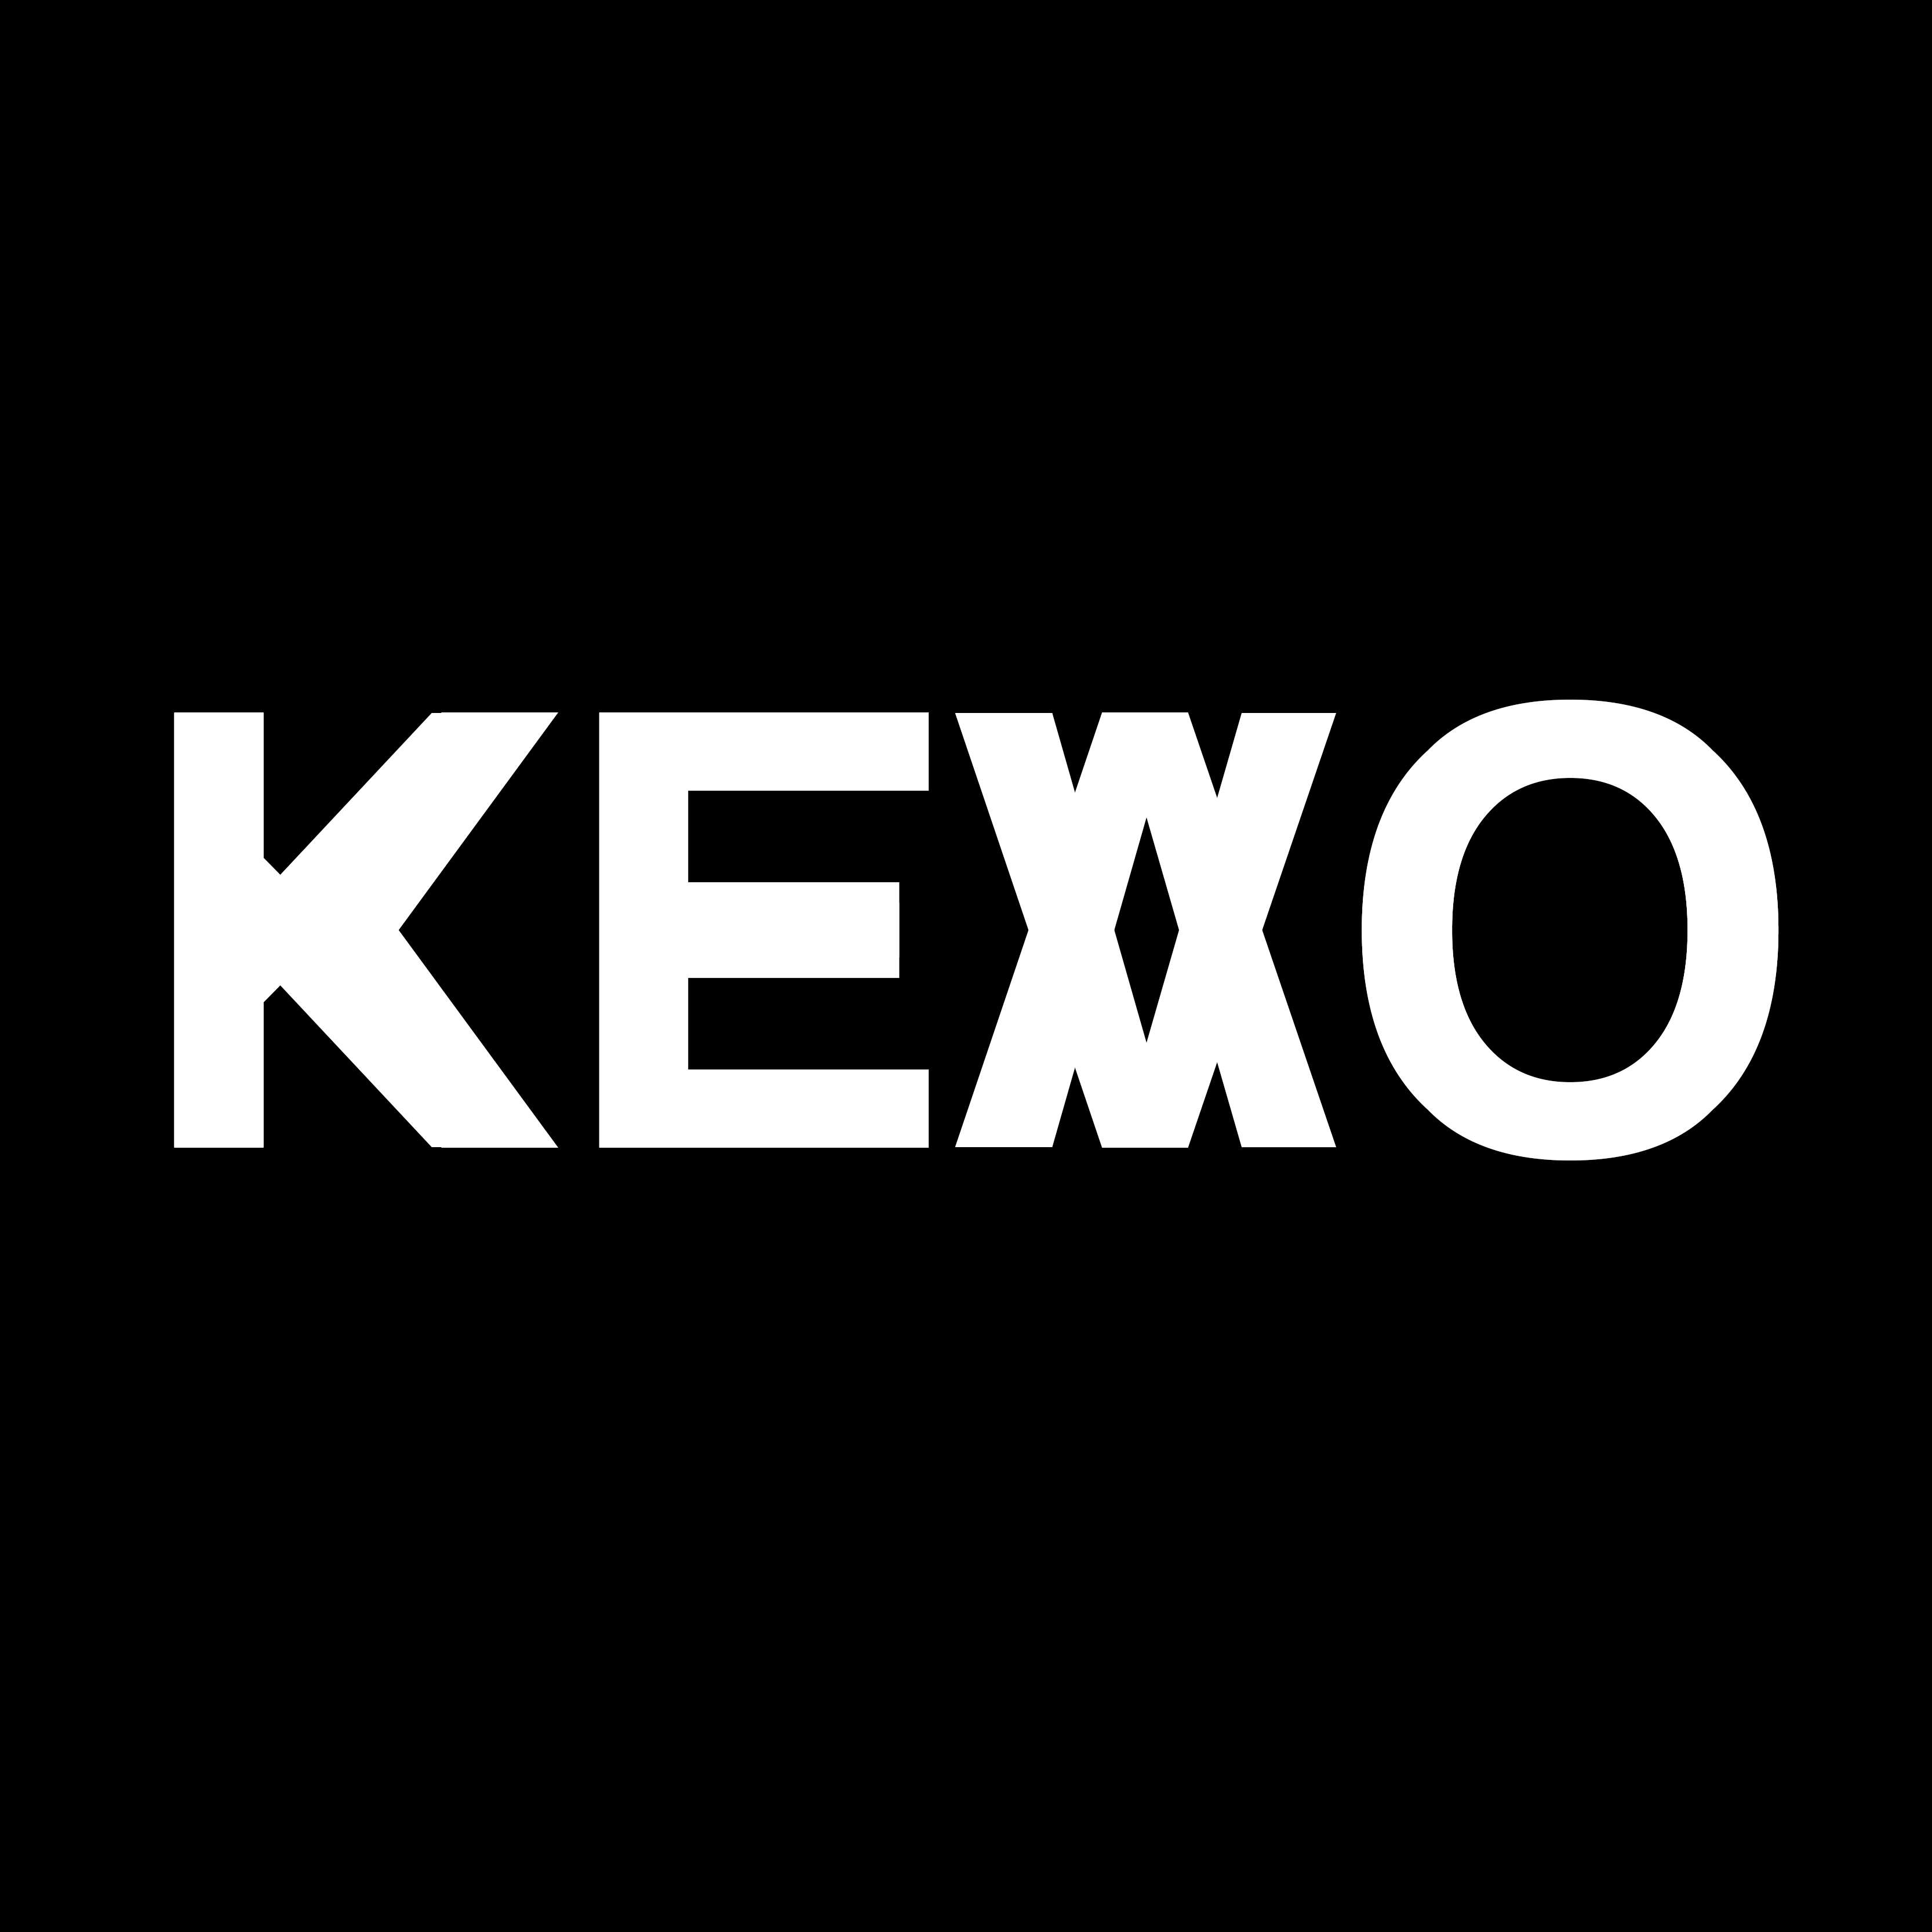 Kevo's avatar.